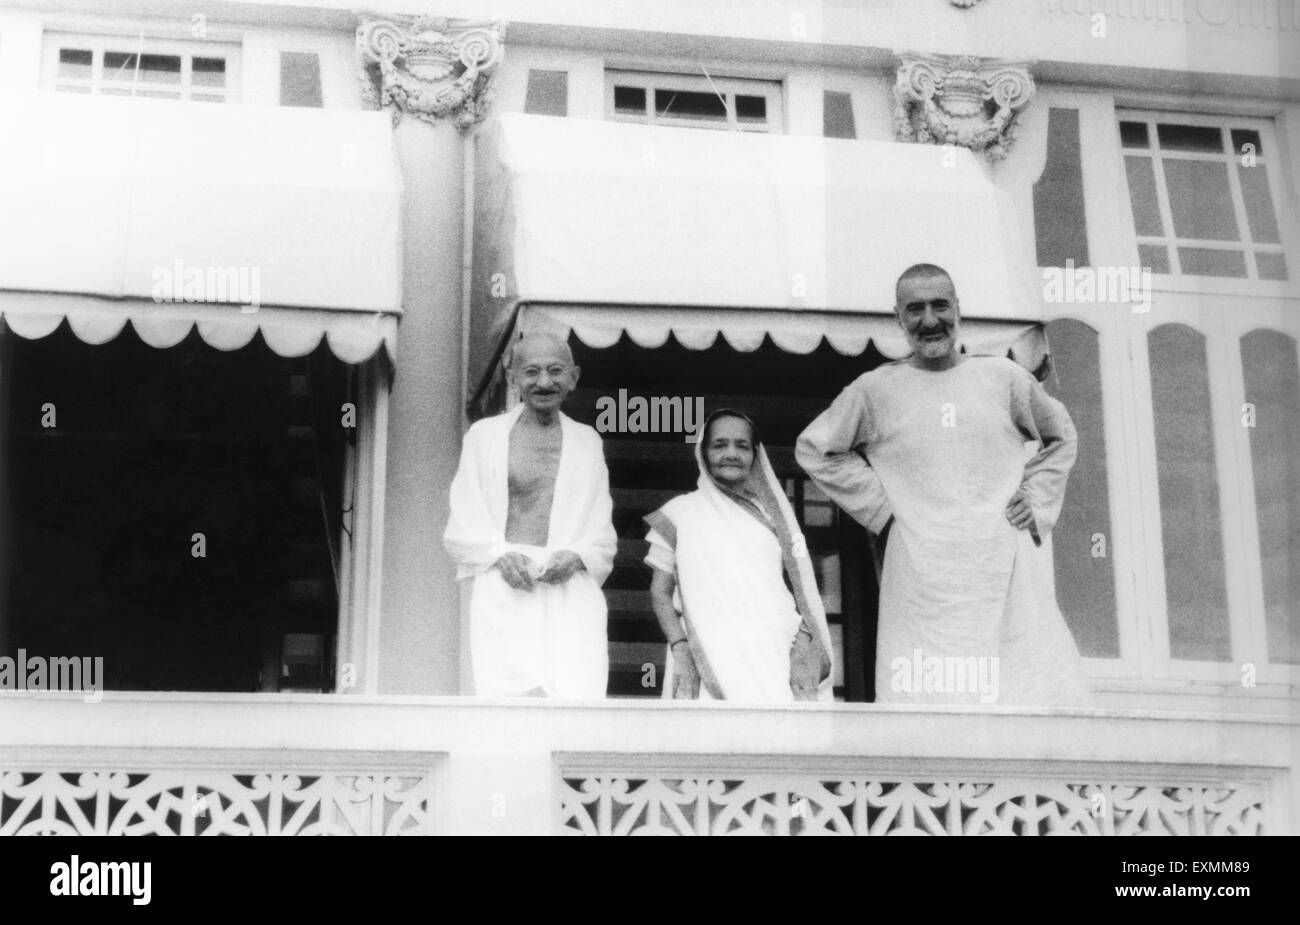 Mahatma Gandhi ; Kasturba Gandhi et Khan Abdul Gaffar Khan debout sur un balcon ; Mumbai ; 1940 ; Inde PAS DE MR Banque D'Images